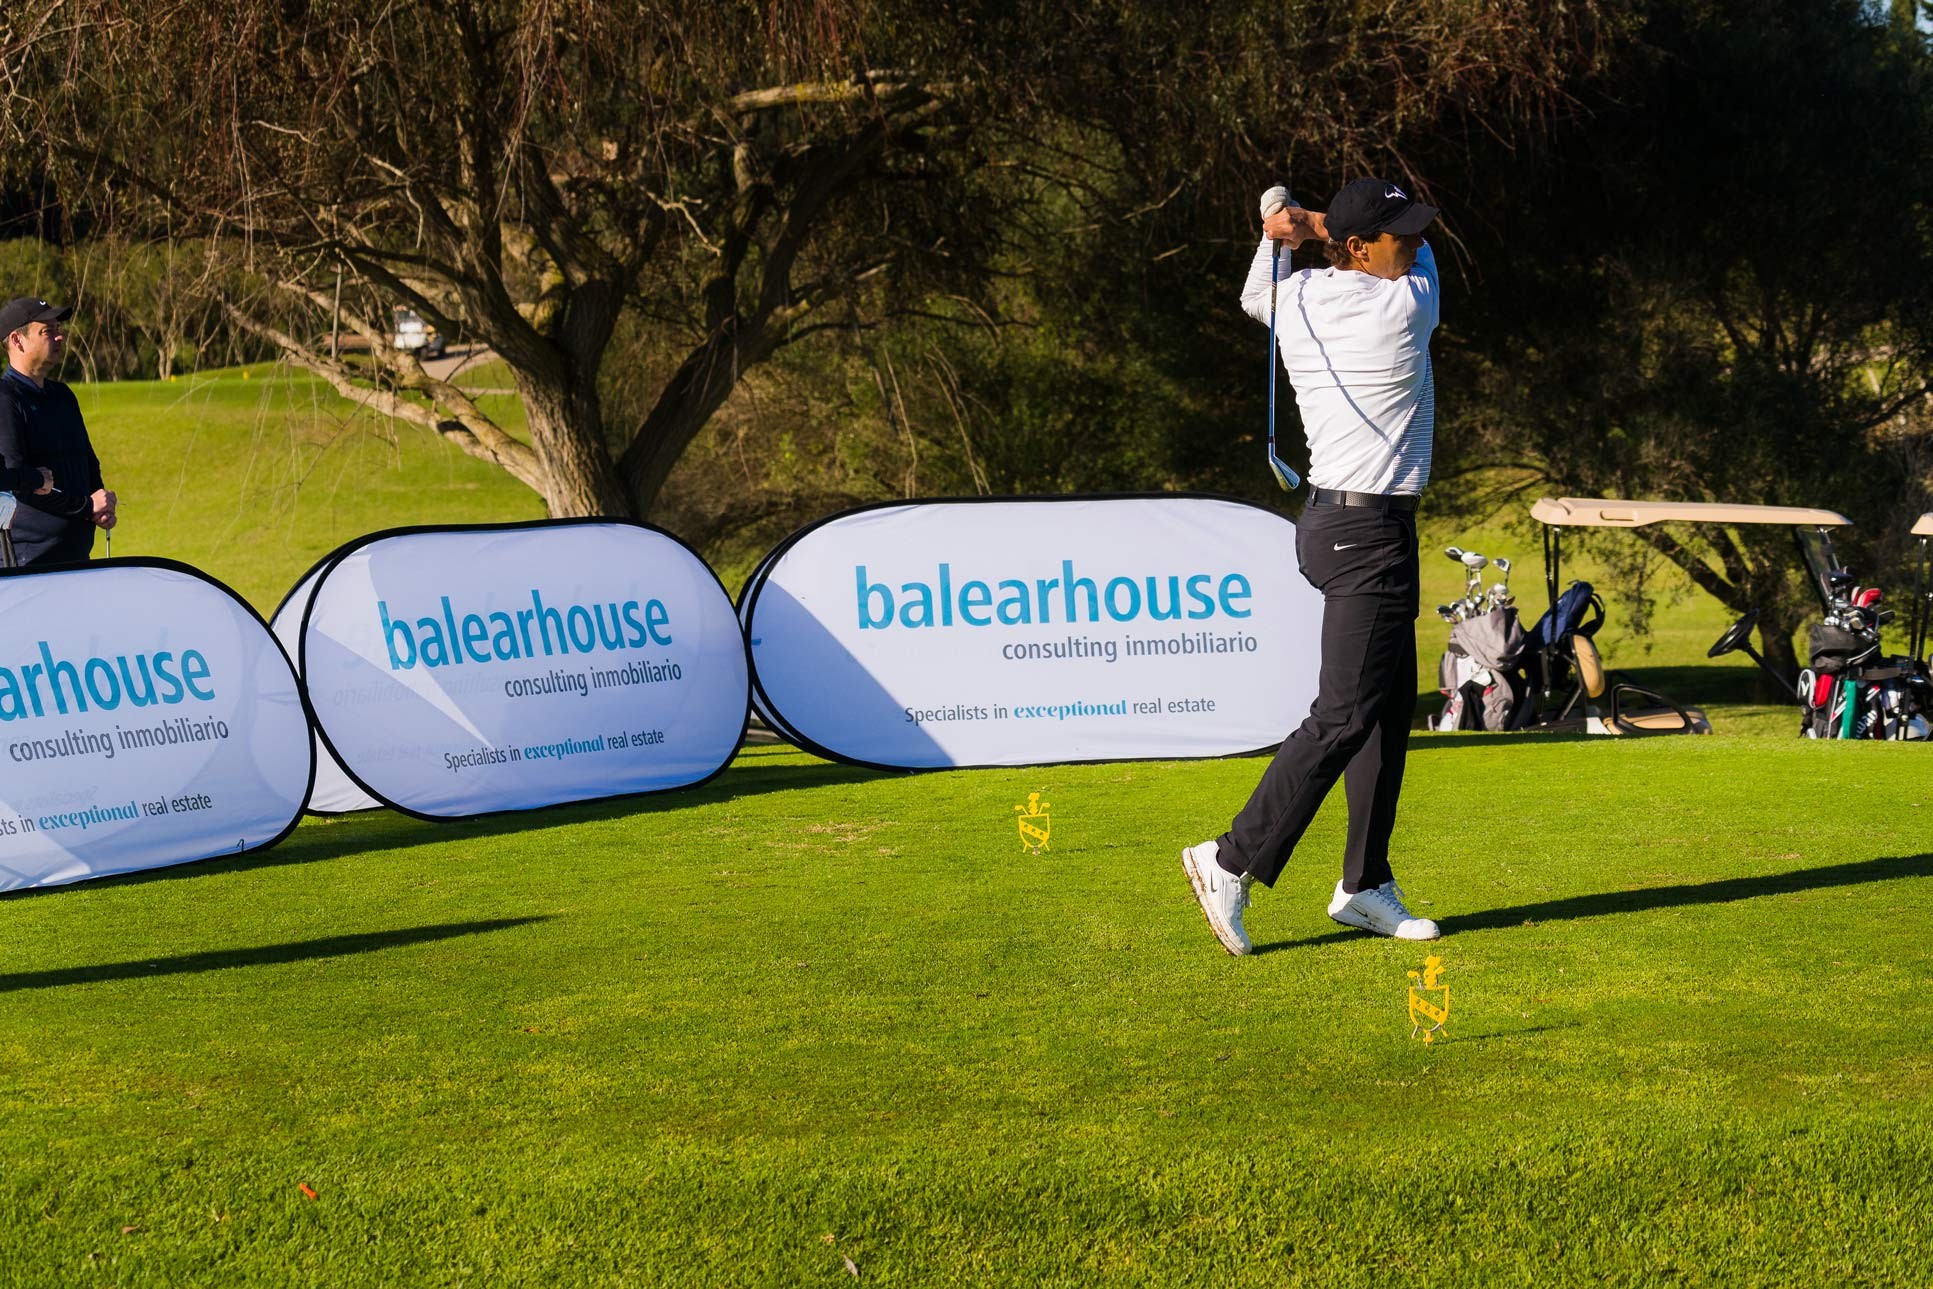 Balearhouse con la VI edición del Torneo de Golf Olazábal & Nadal Invitational by Pula Golf Resort donde deporte y gastronomía se unen con fines benéficos.